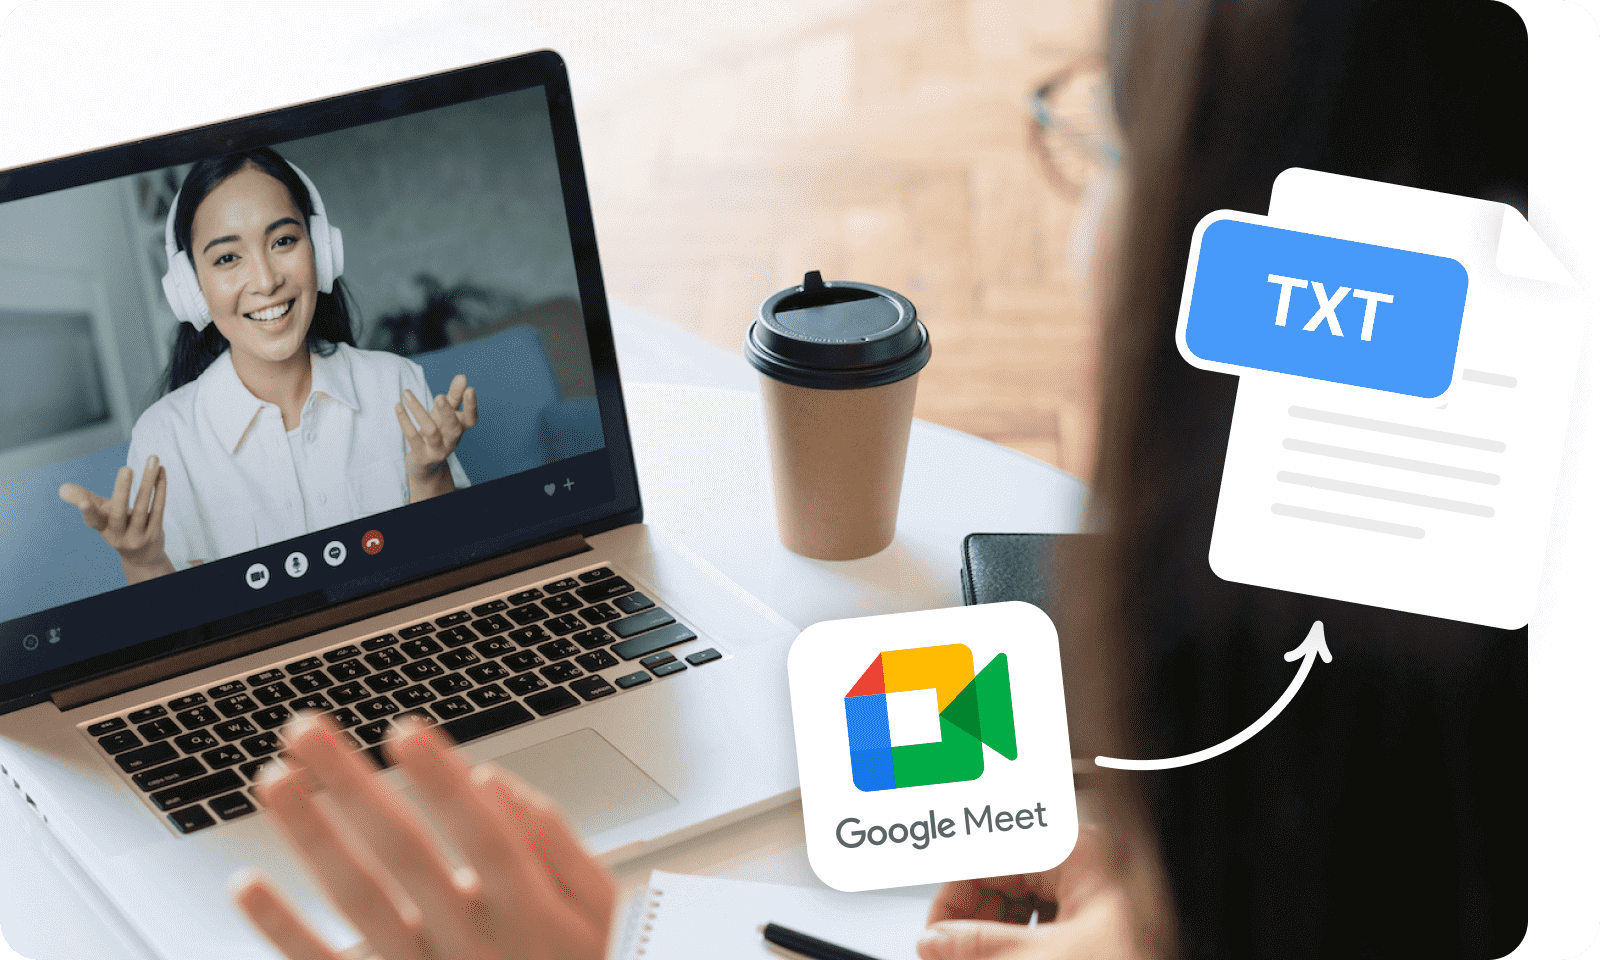 Transcrever ao vivo as chamadas do Google Meet